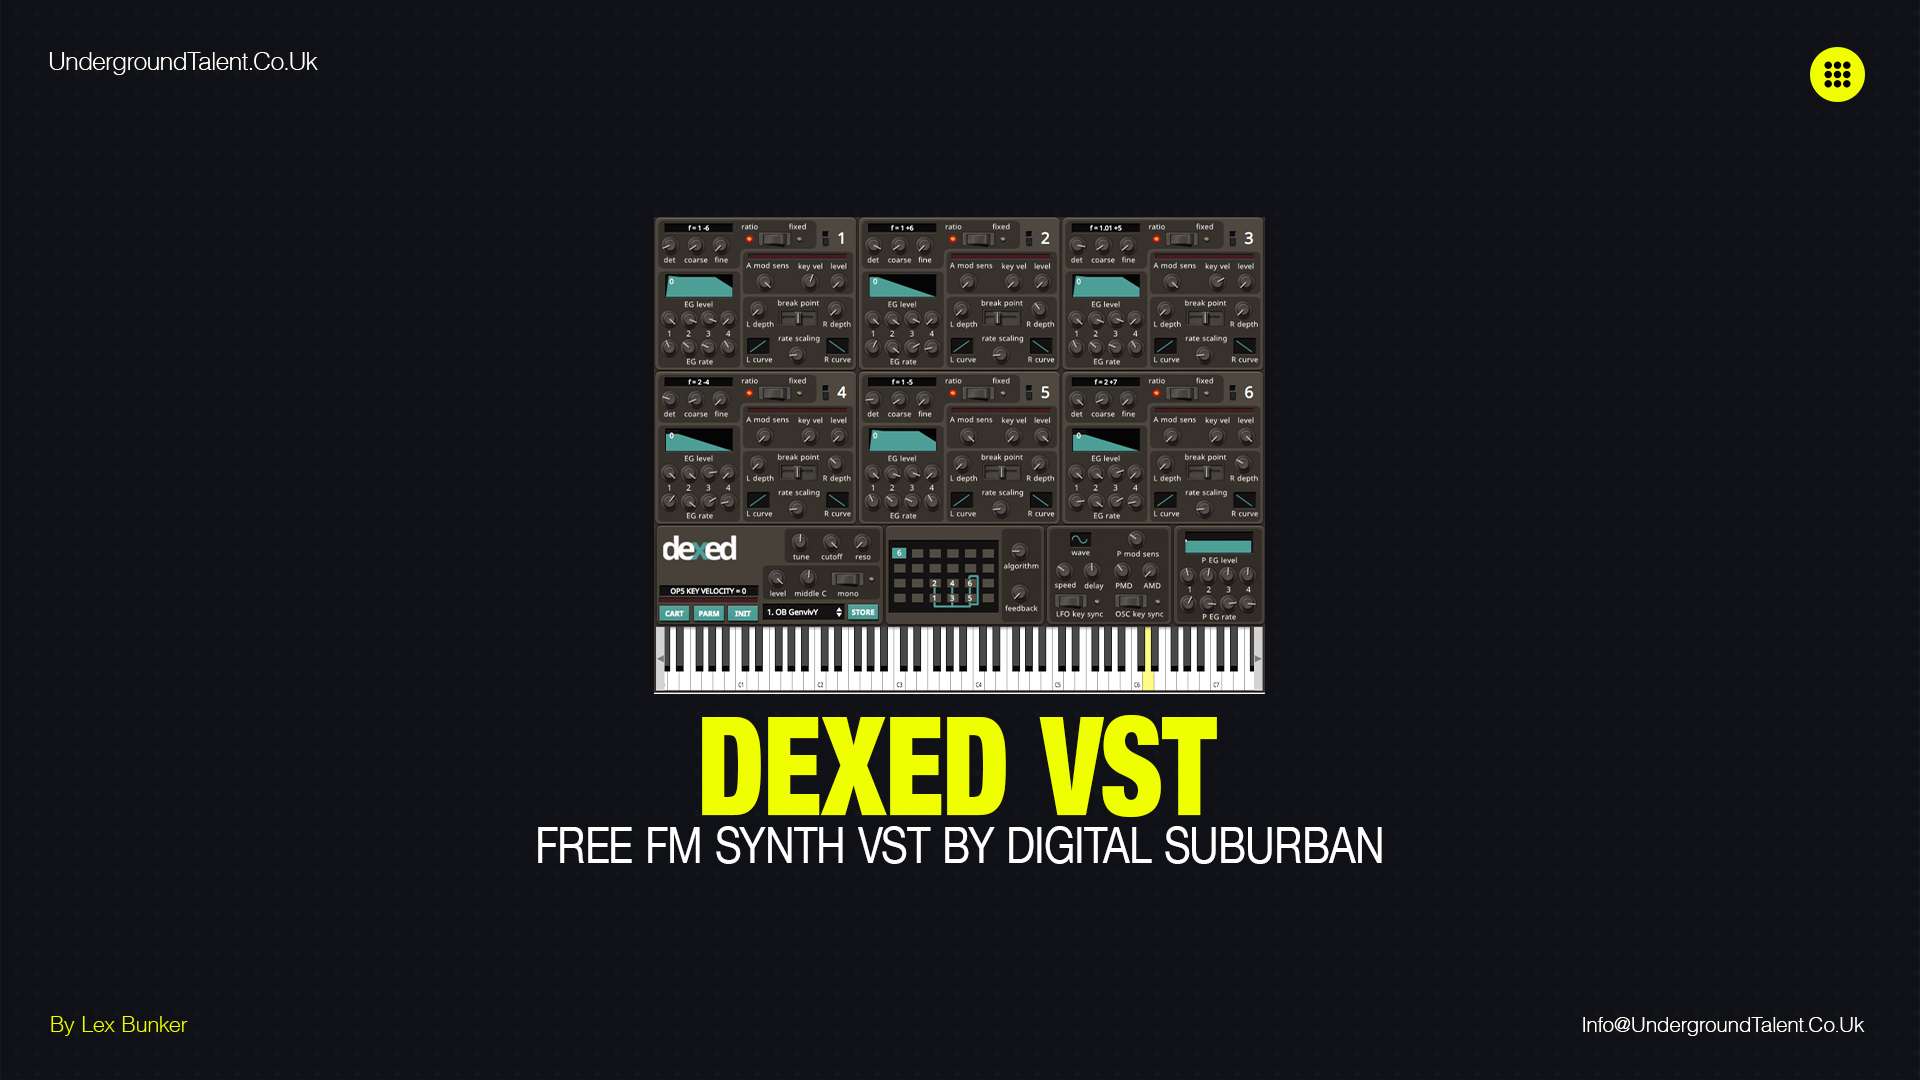 Dexed: Free FM Synth VST by Digital Suburban